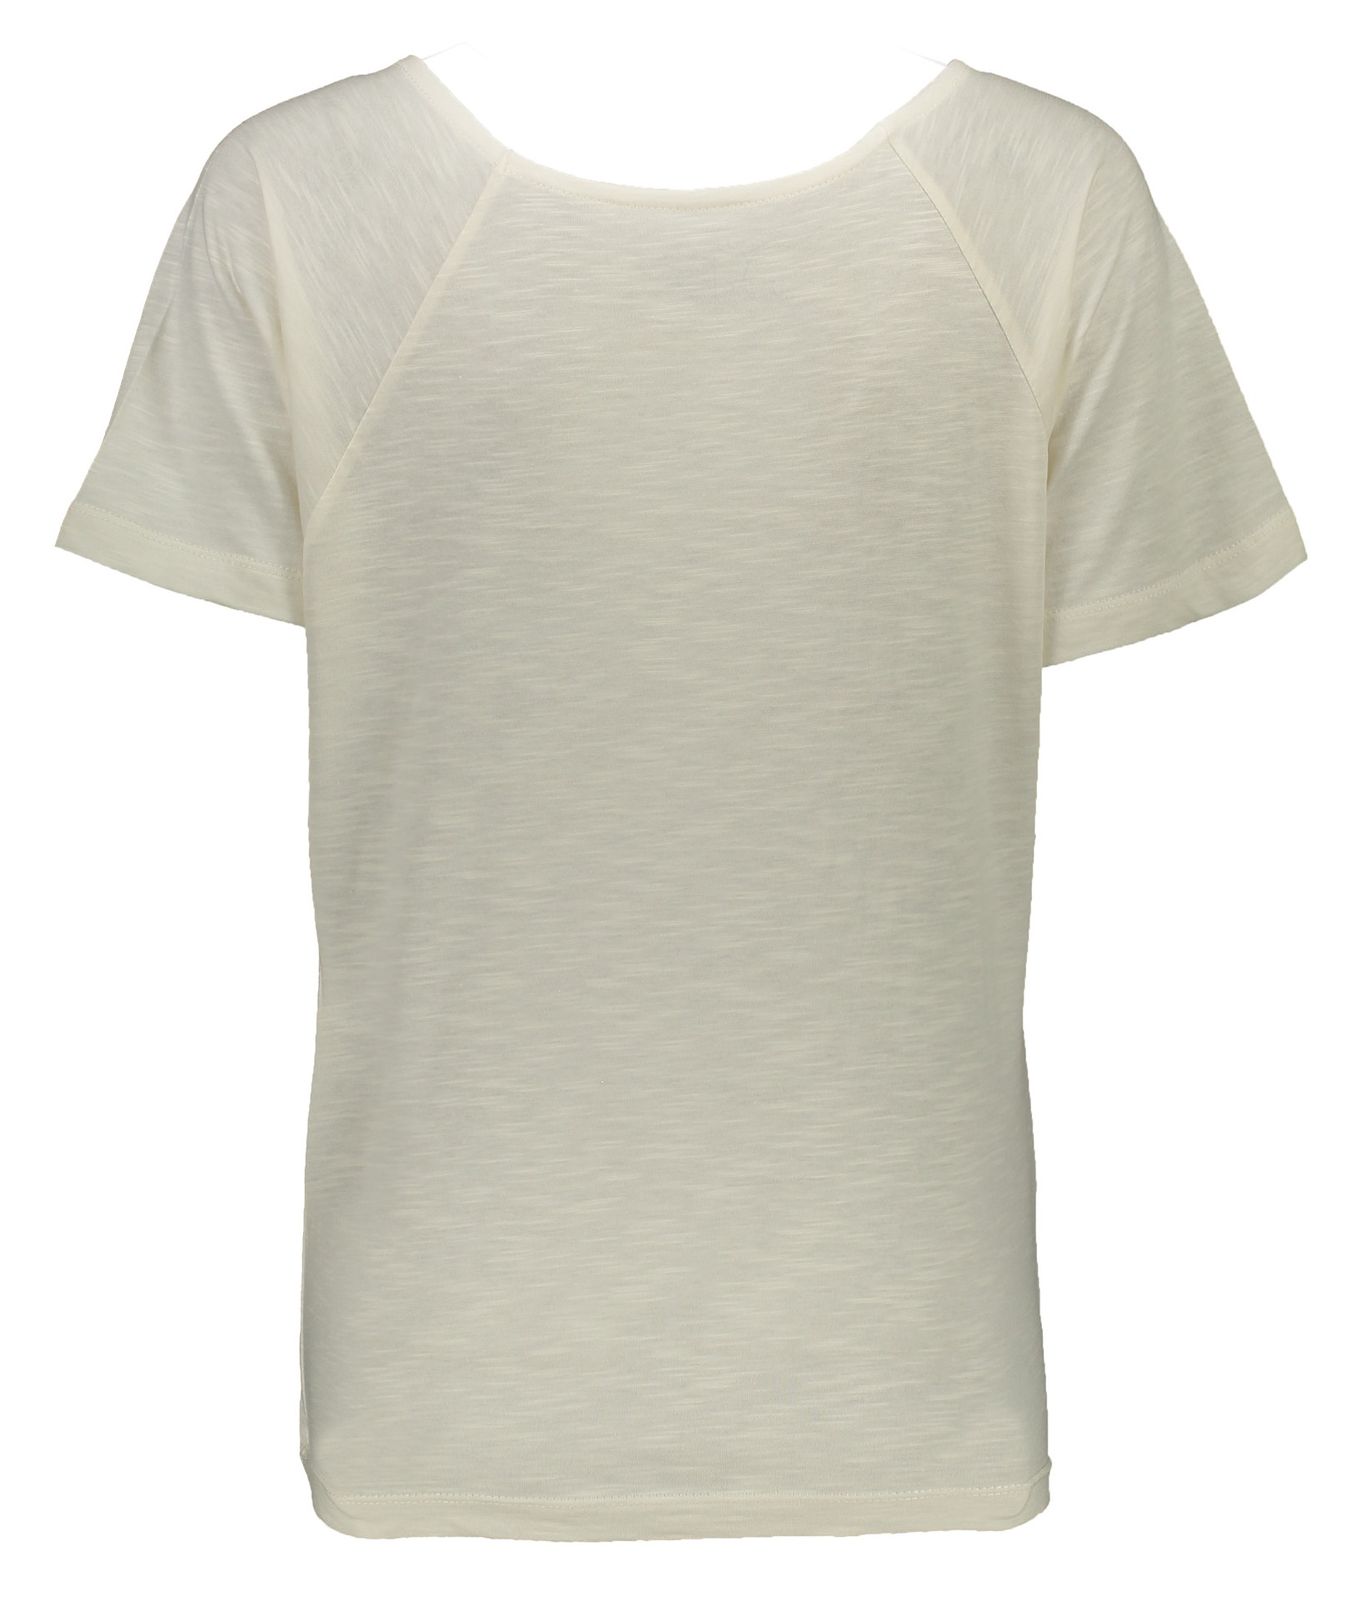 تی شرت زنانه گارودی مدل 1003104023-91